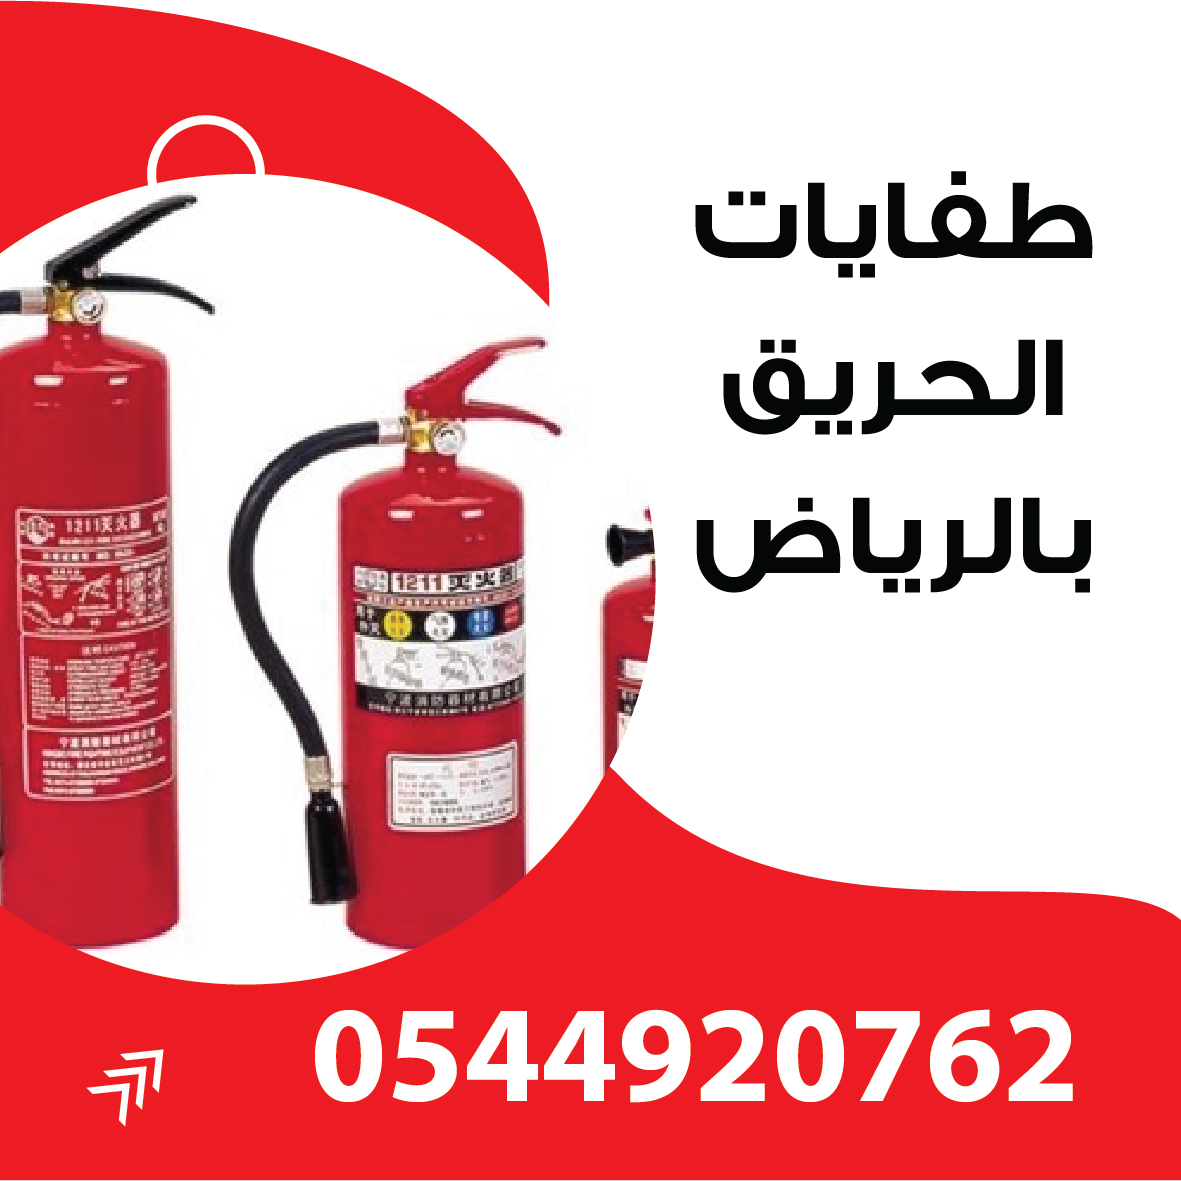 شركة صيانة طفايات حريق بالرياض / 0544920762 / صيانه طفايات الحريق السعودية